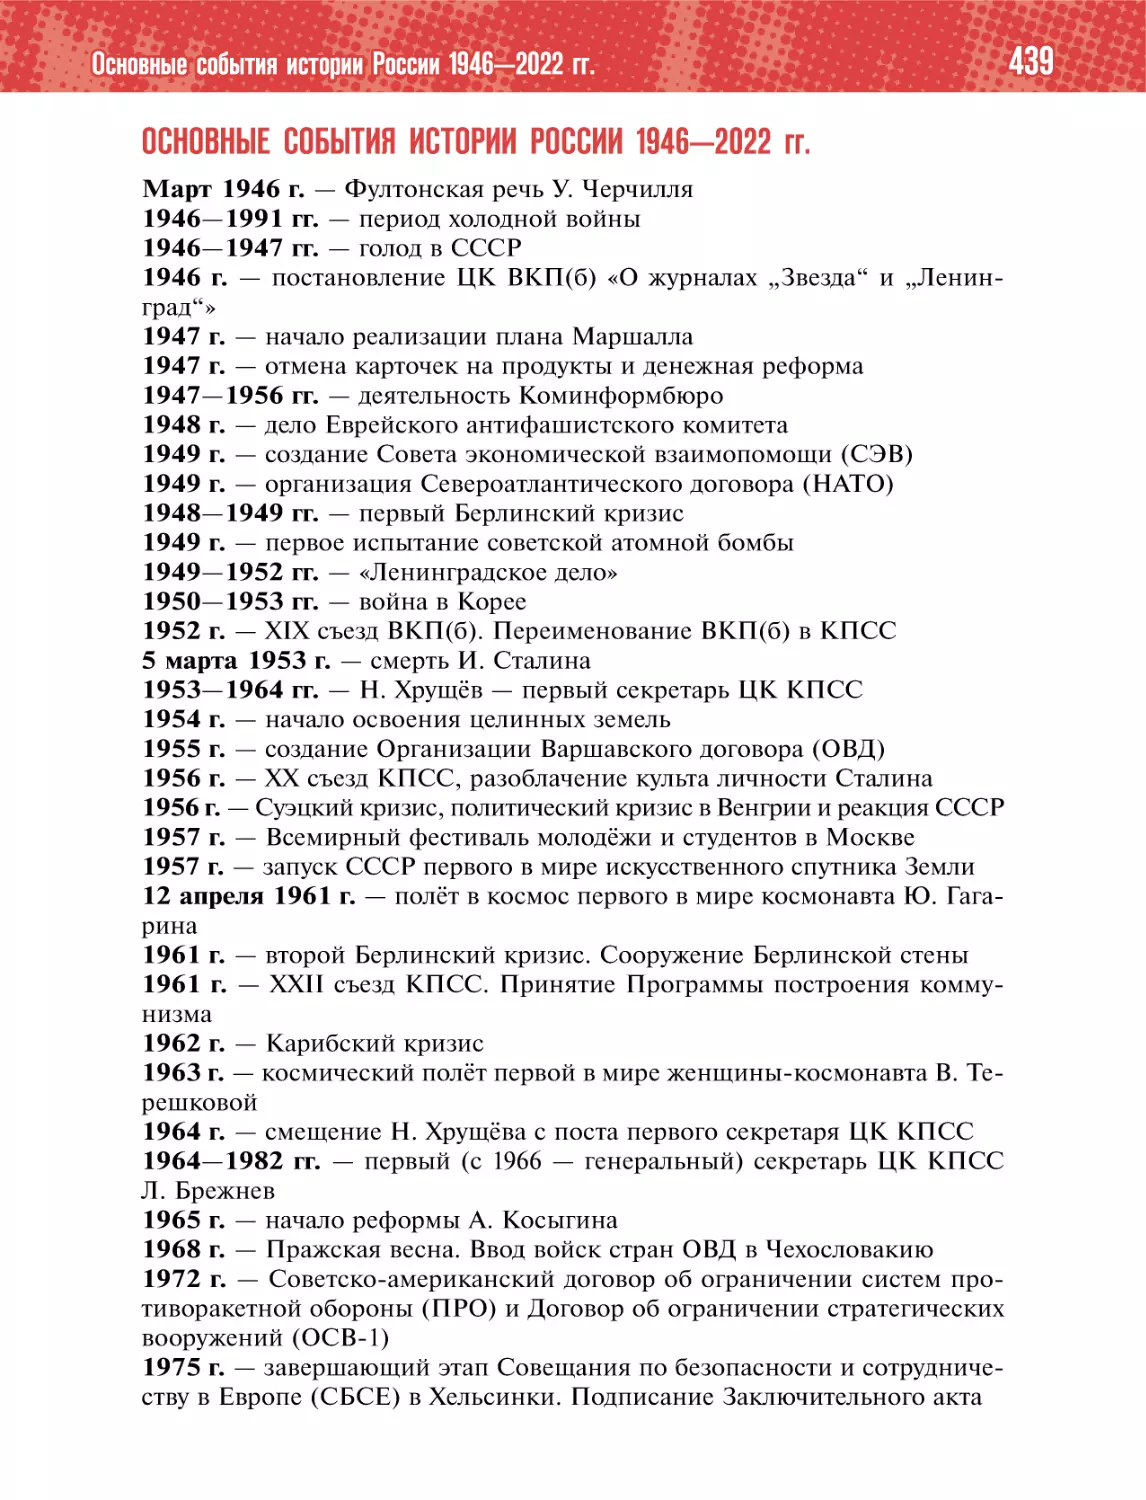 ОСНОВНЫЕ СОБЫТИЯ ИСТОРИИ РОССИИ 1946—2022 гг.